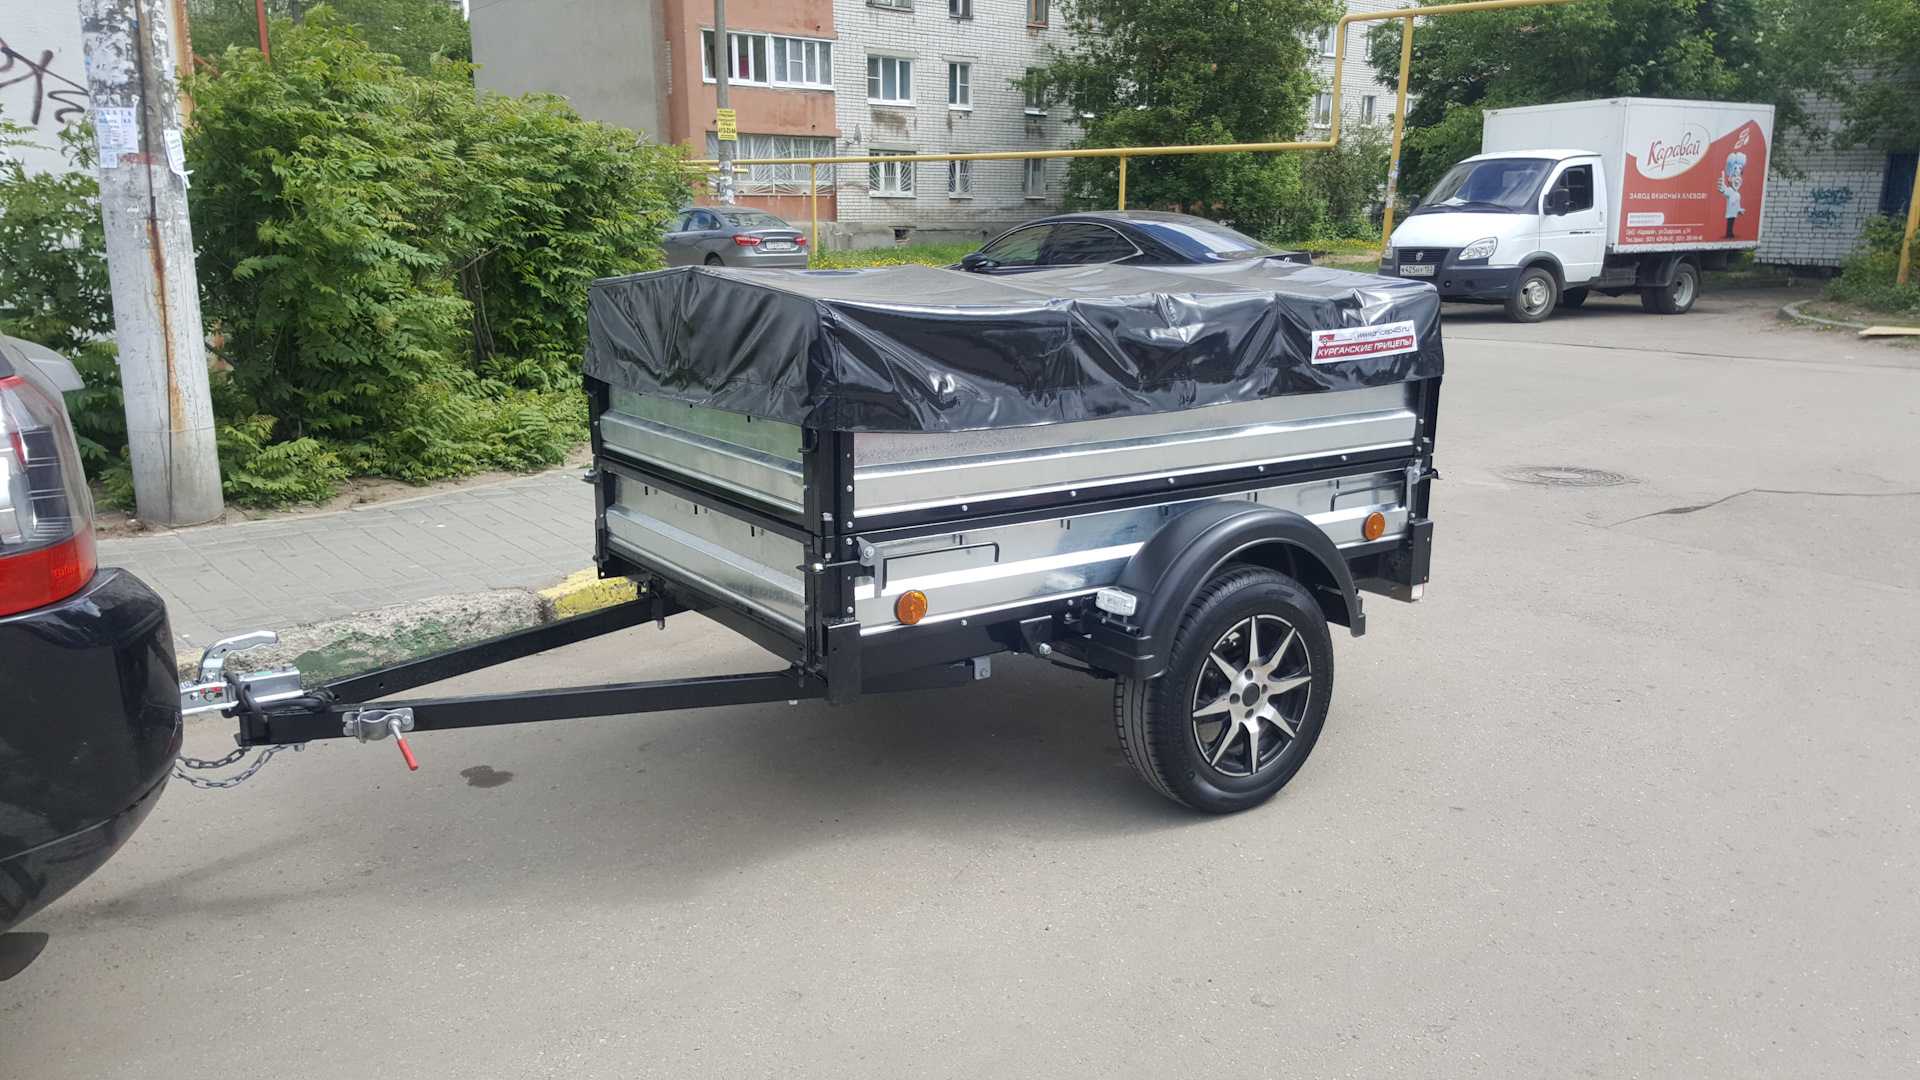 Прицеп для легкового автомобиля "крепыш 2"  купить автоприцеп "крепыш 2" по низкой цене в москве.